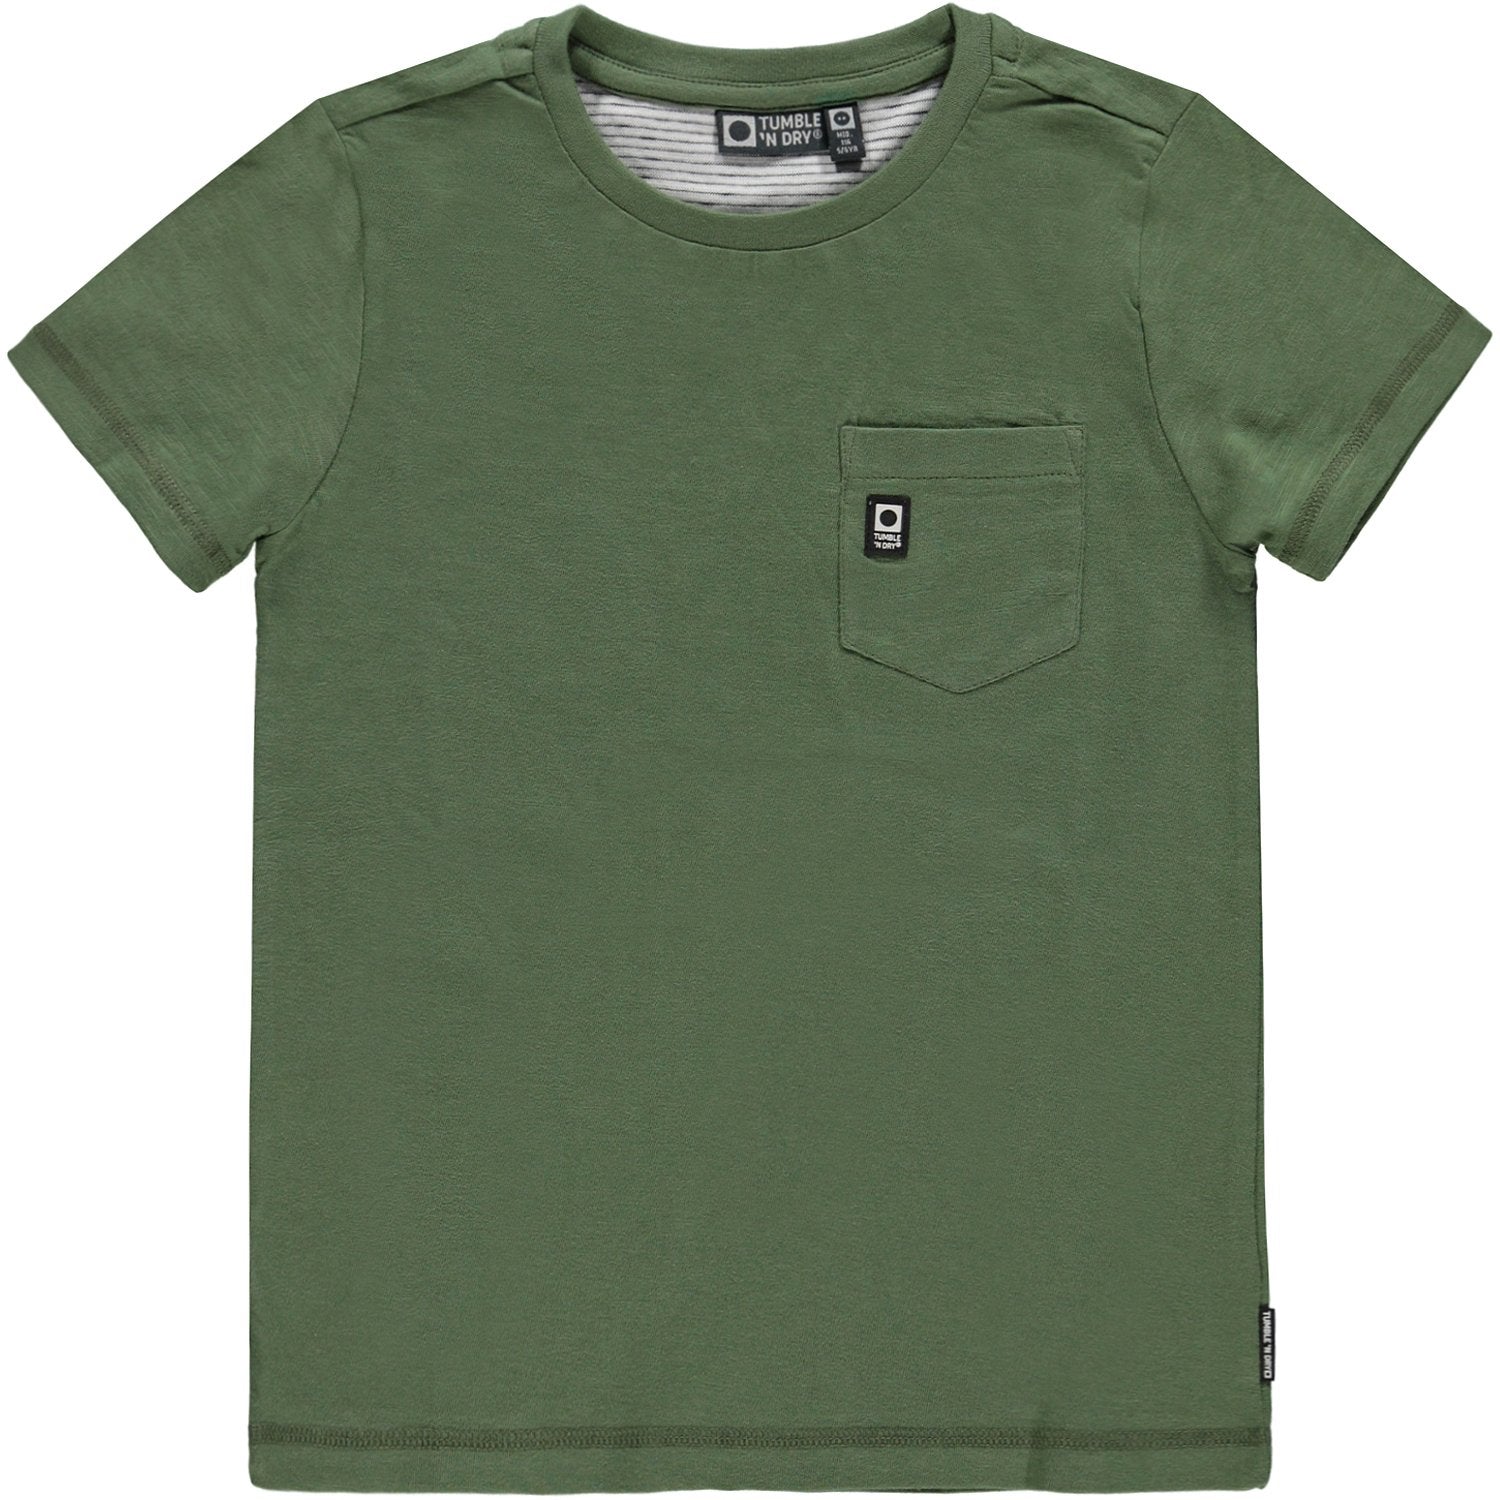 Jongens T-shirt Km O-hals van Tumble 'n Dry in de kleur Vineyard green in maat 128.